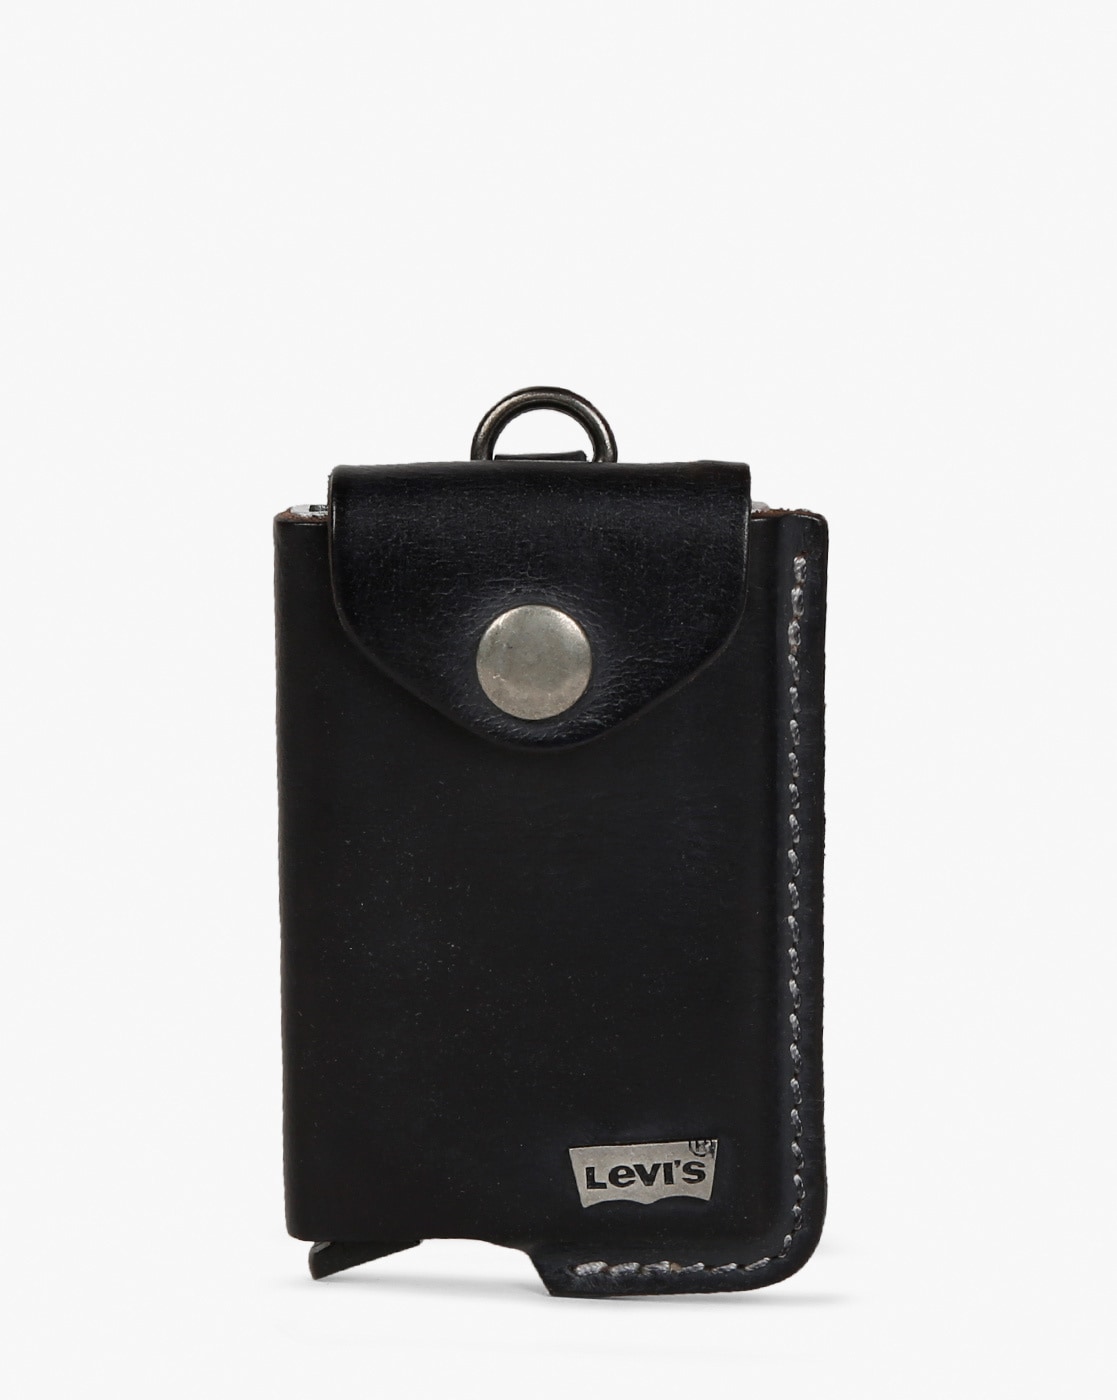 levis mechanical card case